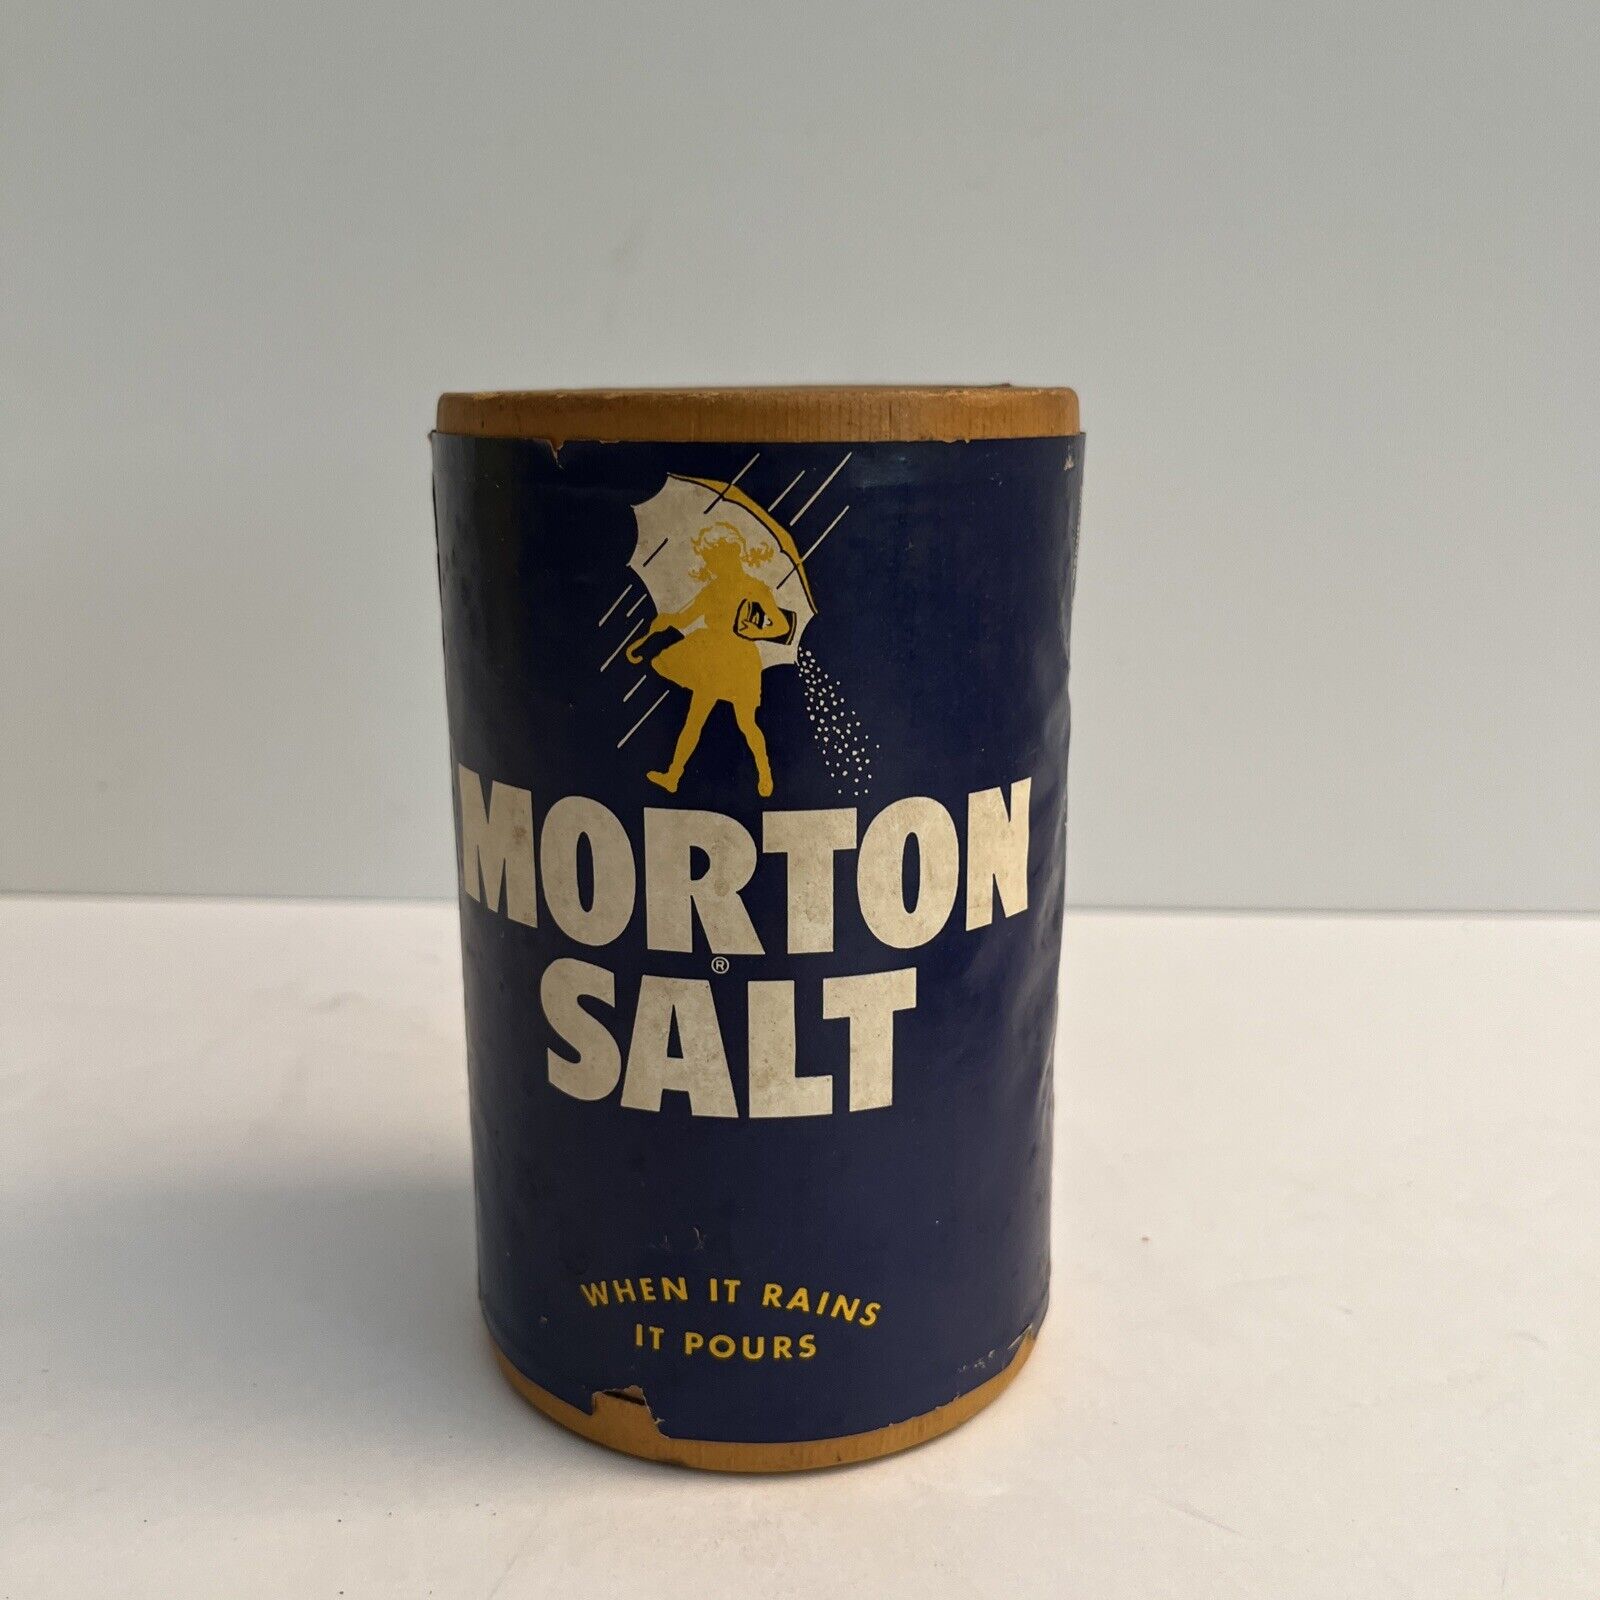 Vintage Morton Salt 1 lb 10 oz Cardboard Canister Full General Store Display